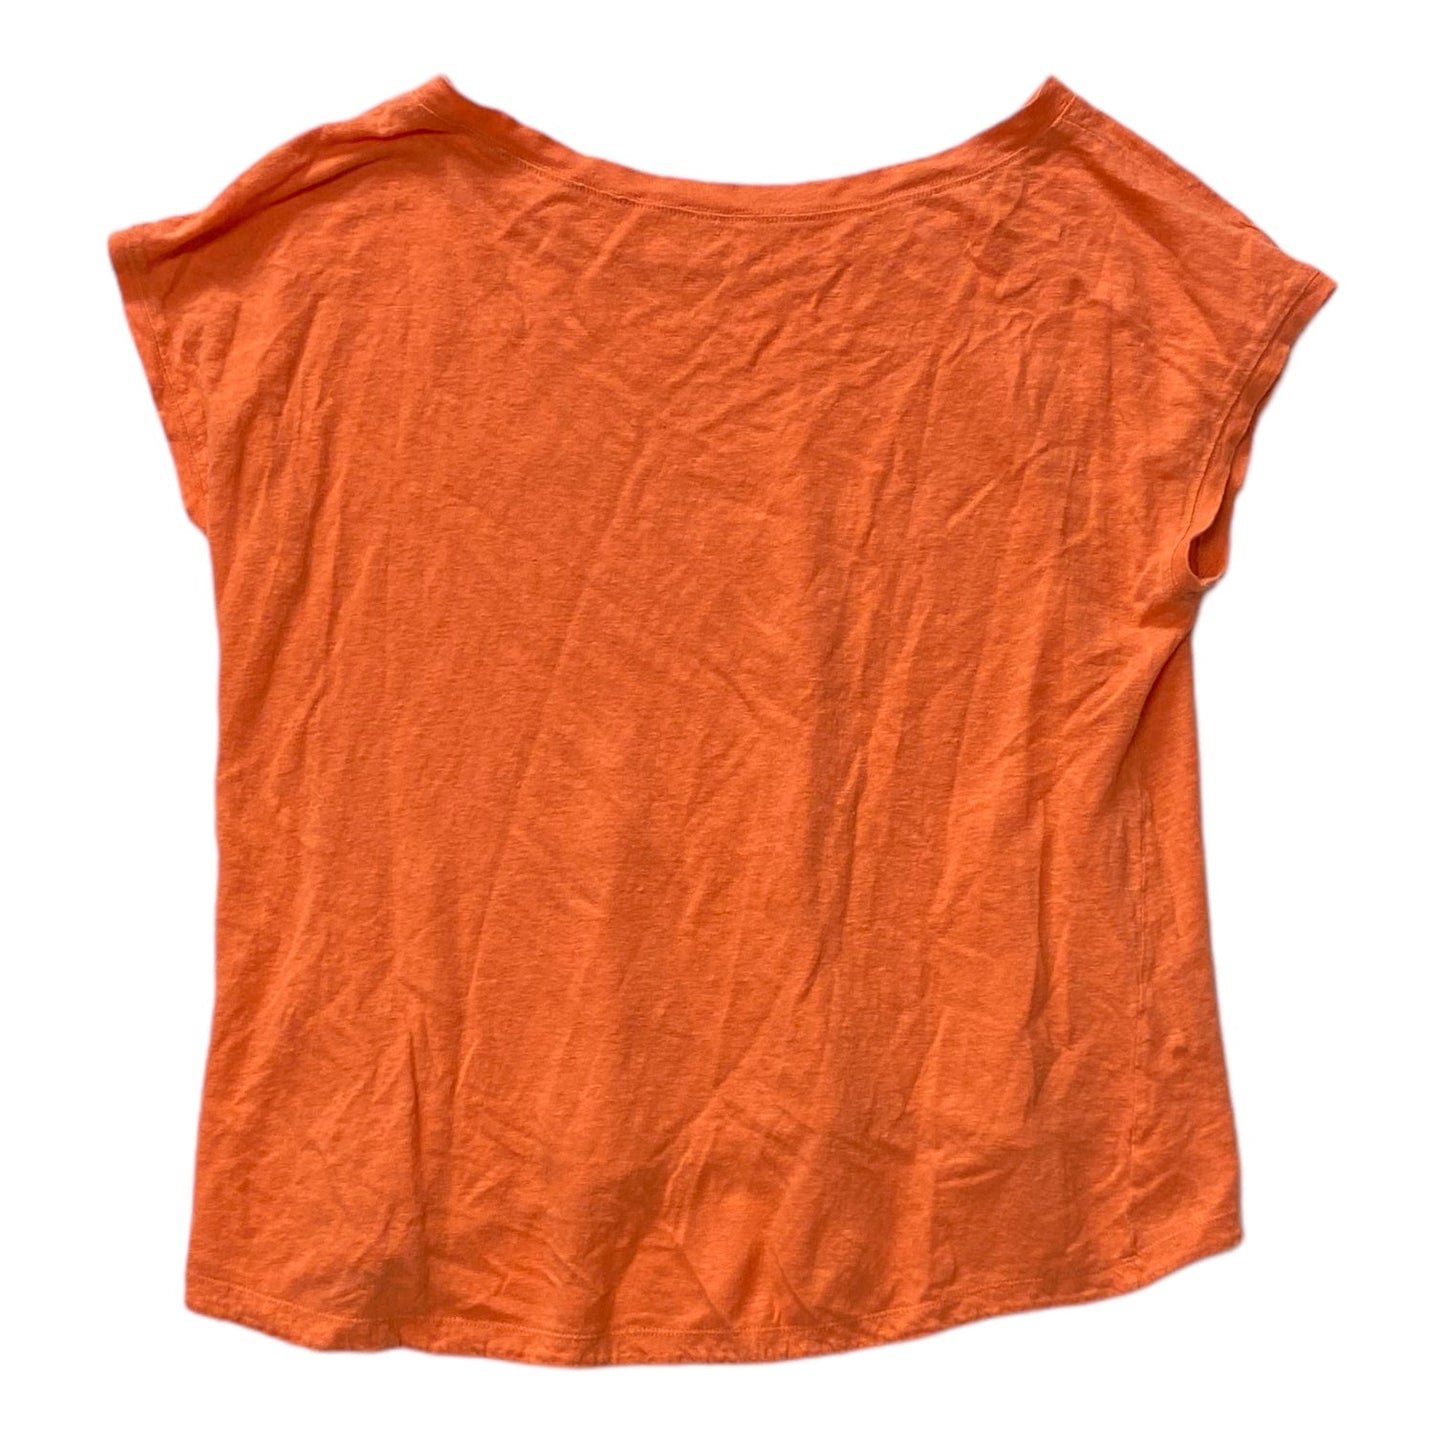 Orange Top Short Sleeve Designer Eileen Fisher, Size M